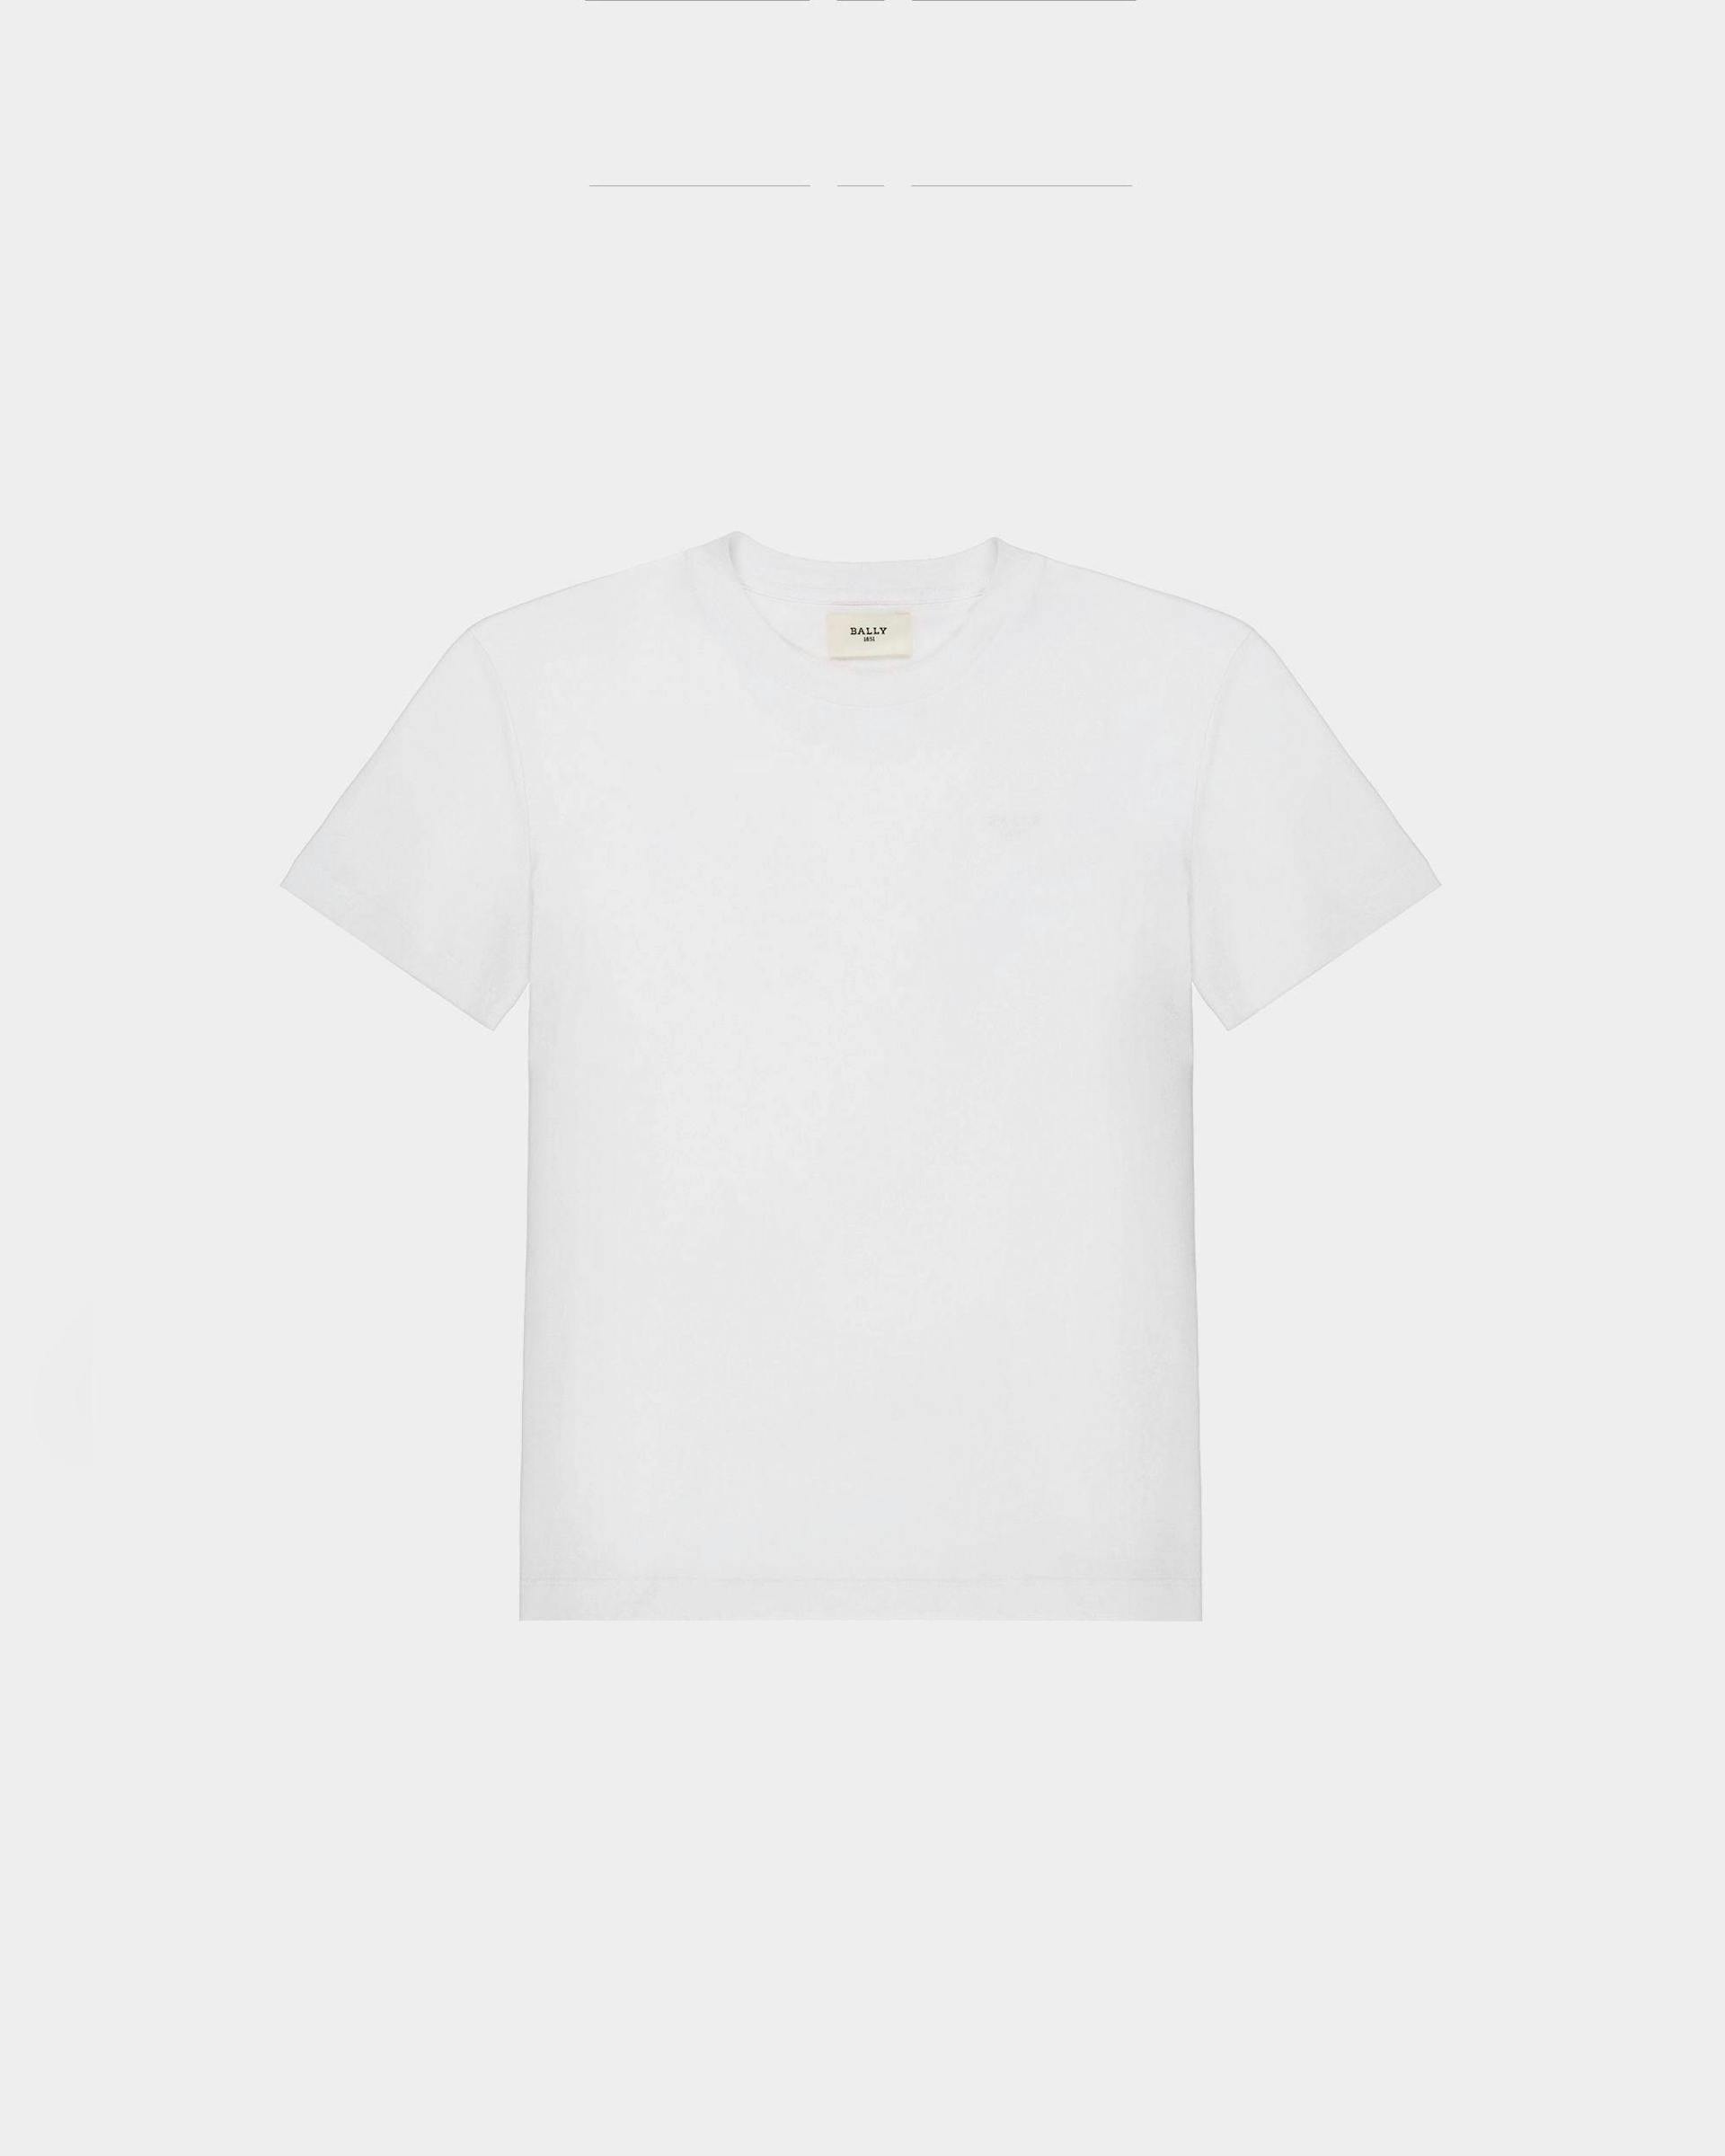 T-Shirt En Coton Biologique Blanc - Femme - Bally - 01